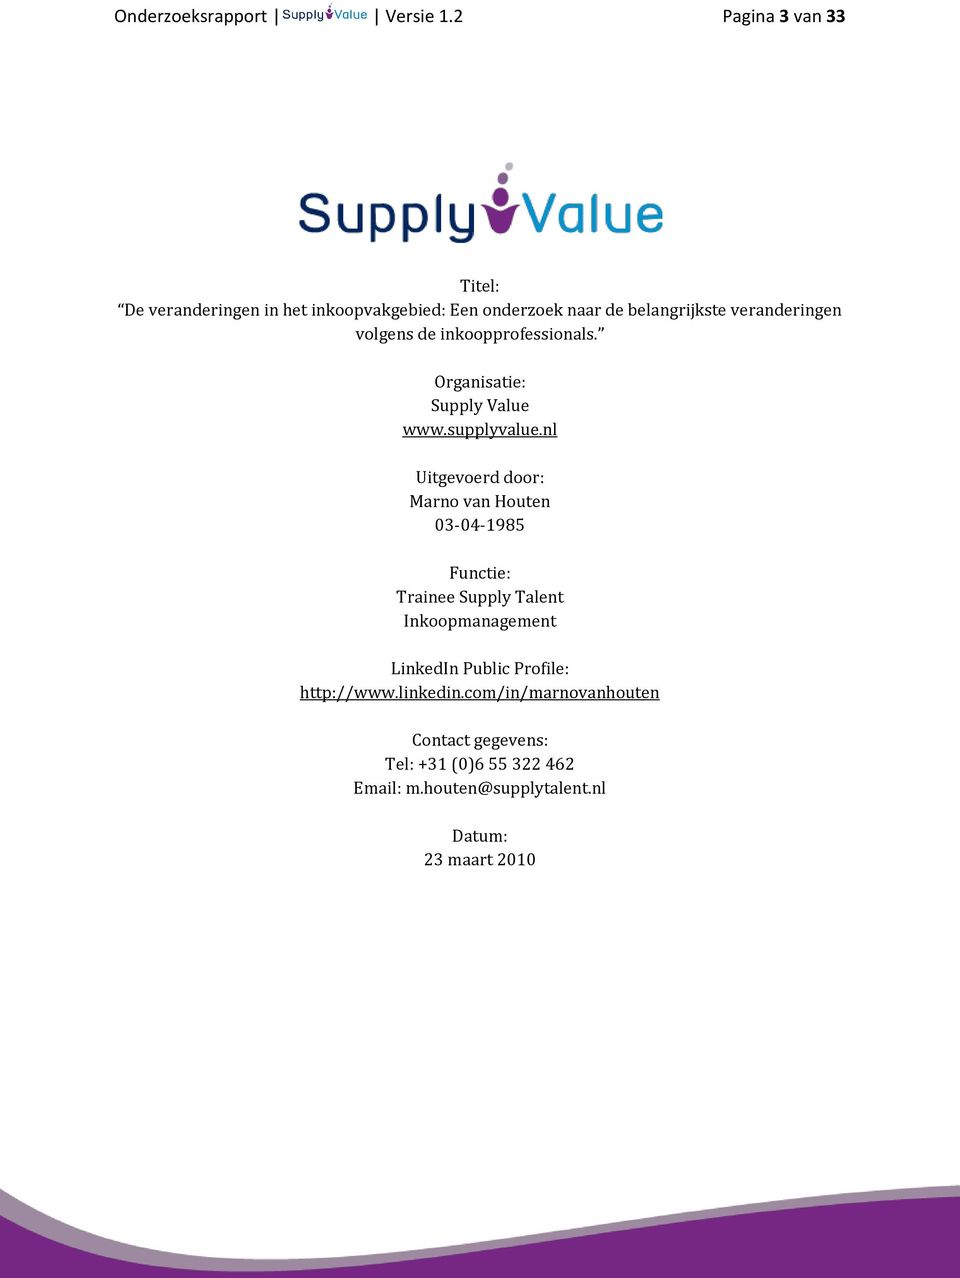 volgens de inkoopprofessionals. Organisatie: Supply Value www.supplyvalue.